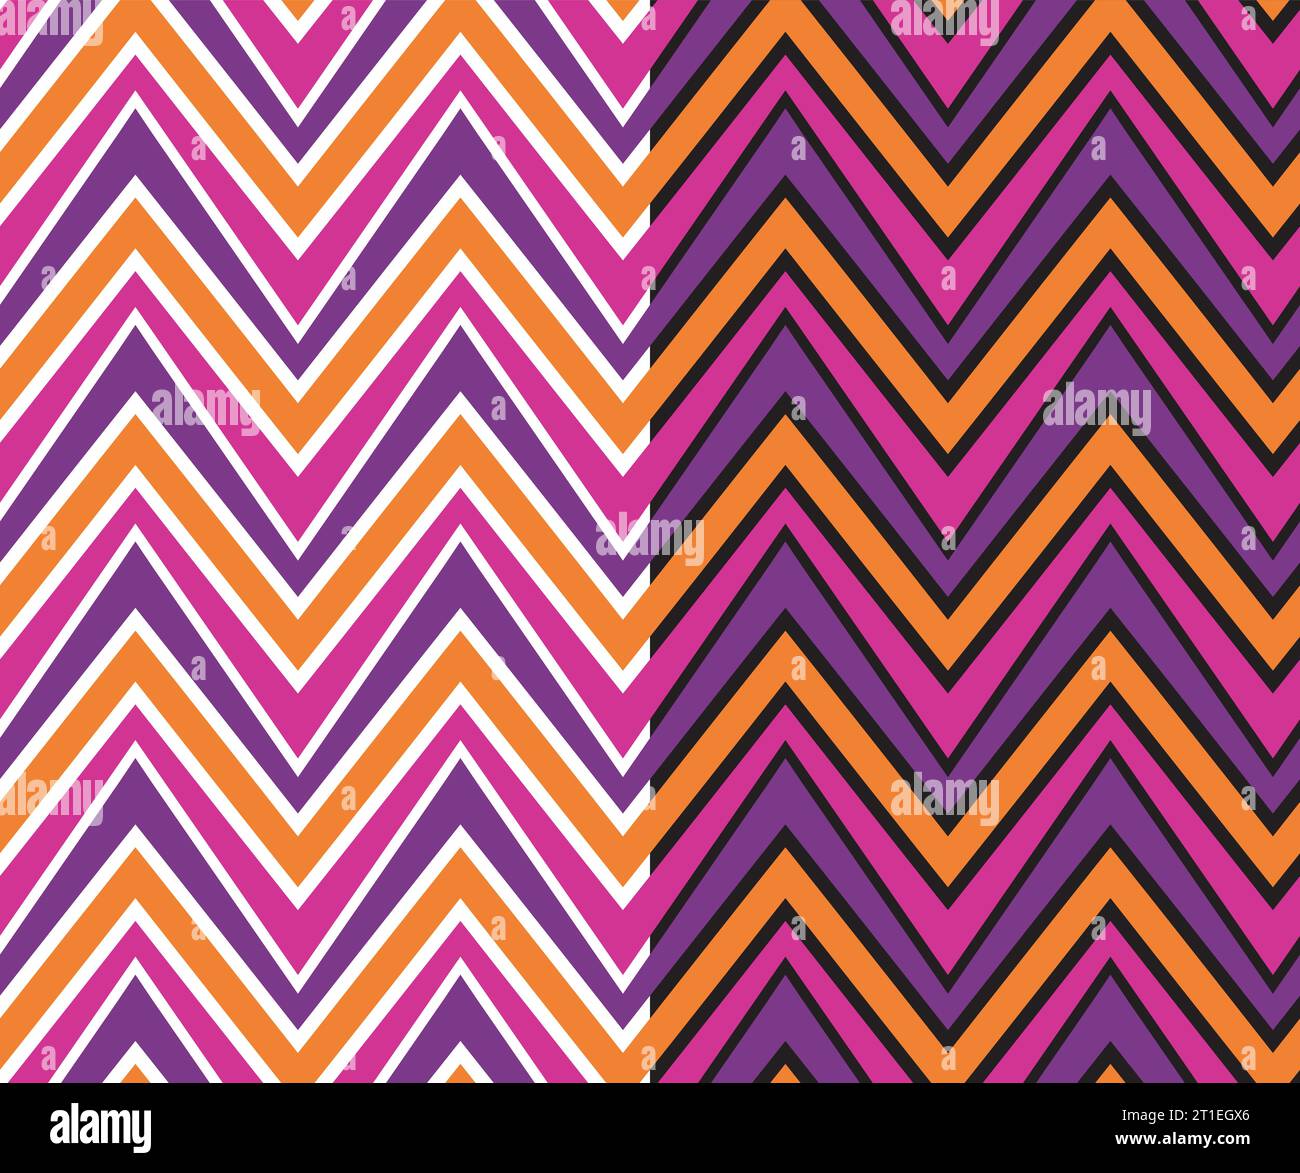 Campione geometrico motivo chevron senza cuciture, stile hipster anni '70, forma a triangolo, strisce astratte a zigzag, tavolozza di colori viola e lilla arancione Illustrazione Vettoriale